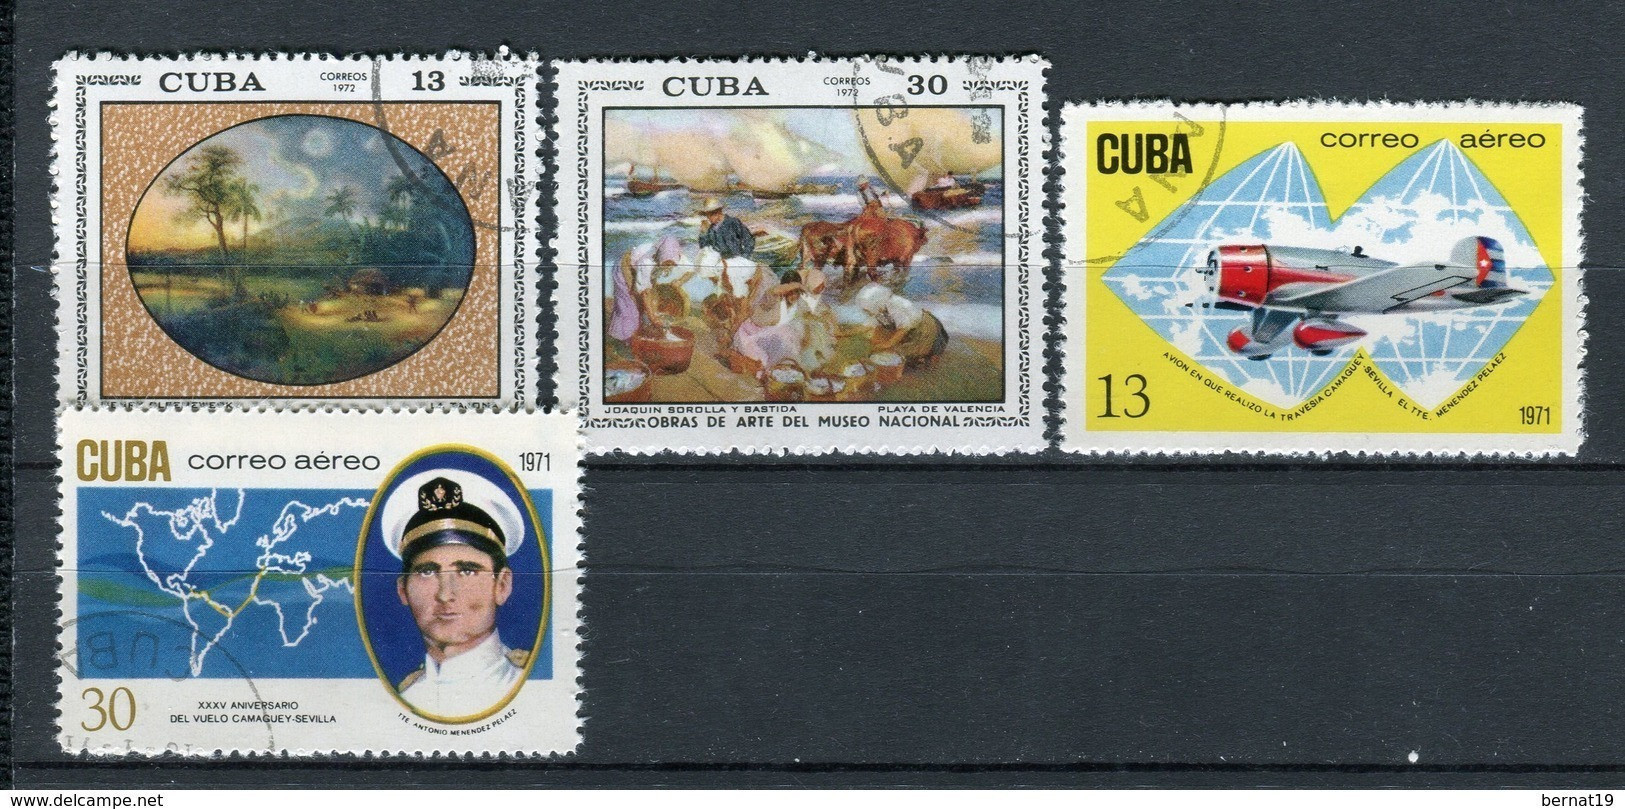 Cuba 1971 Completo Sin Hojas Bloque Usado. - Años Completos